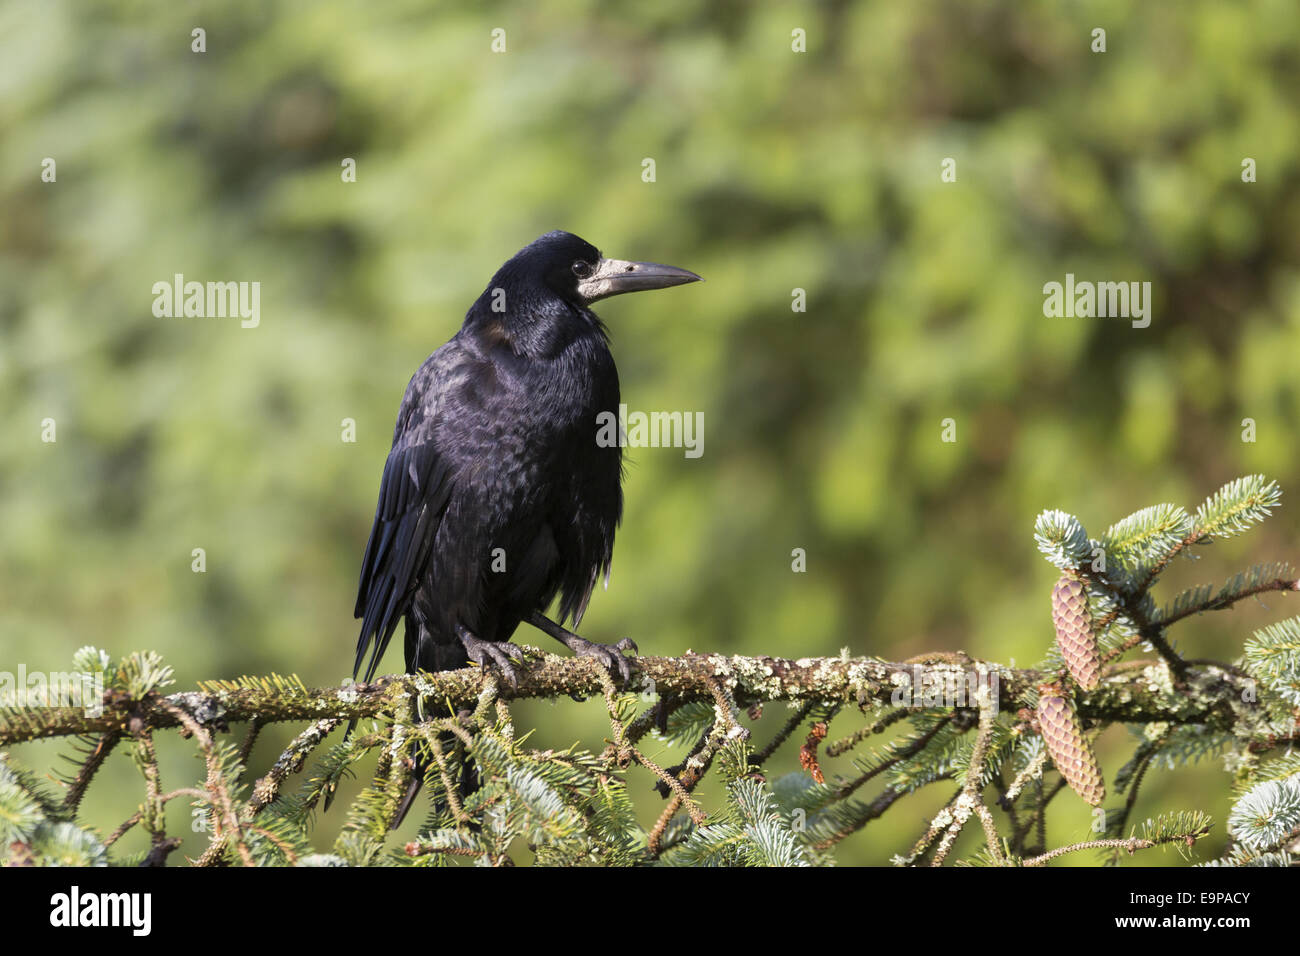 Corbeau freux (corvus frugilegus) adulte, perché sur une branche de conifère arbre, près de Portree, Isle of Skye, Hébrides intérieures, Ecosse, juillet Banque D'Images